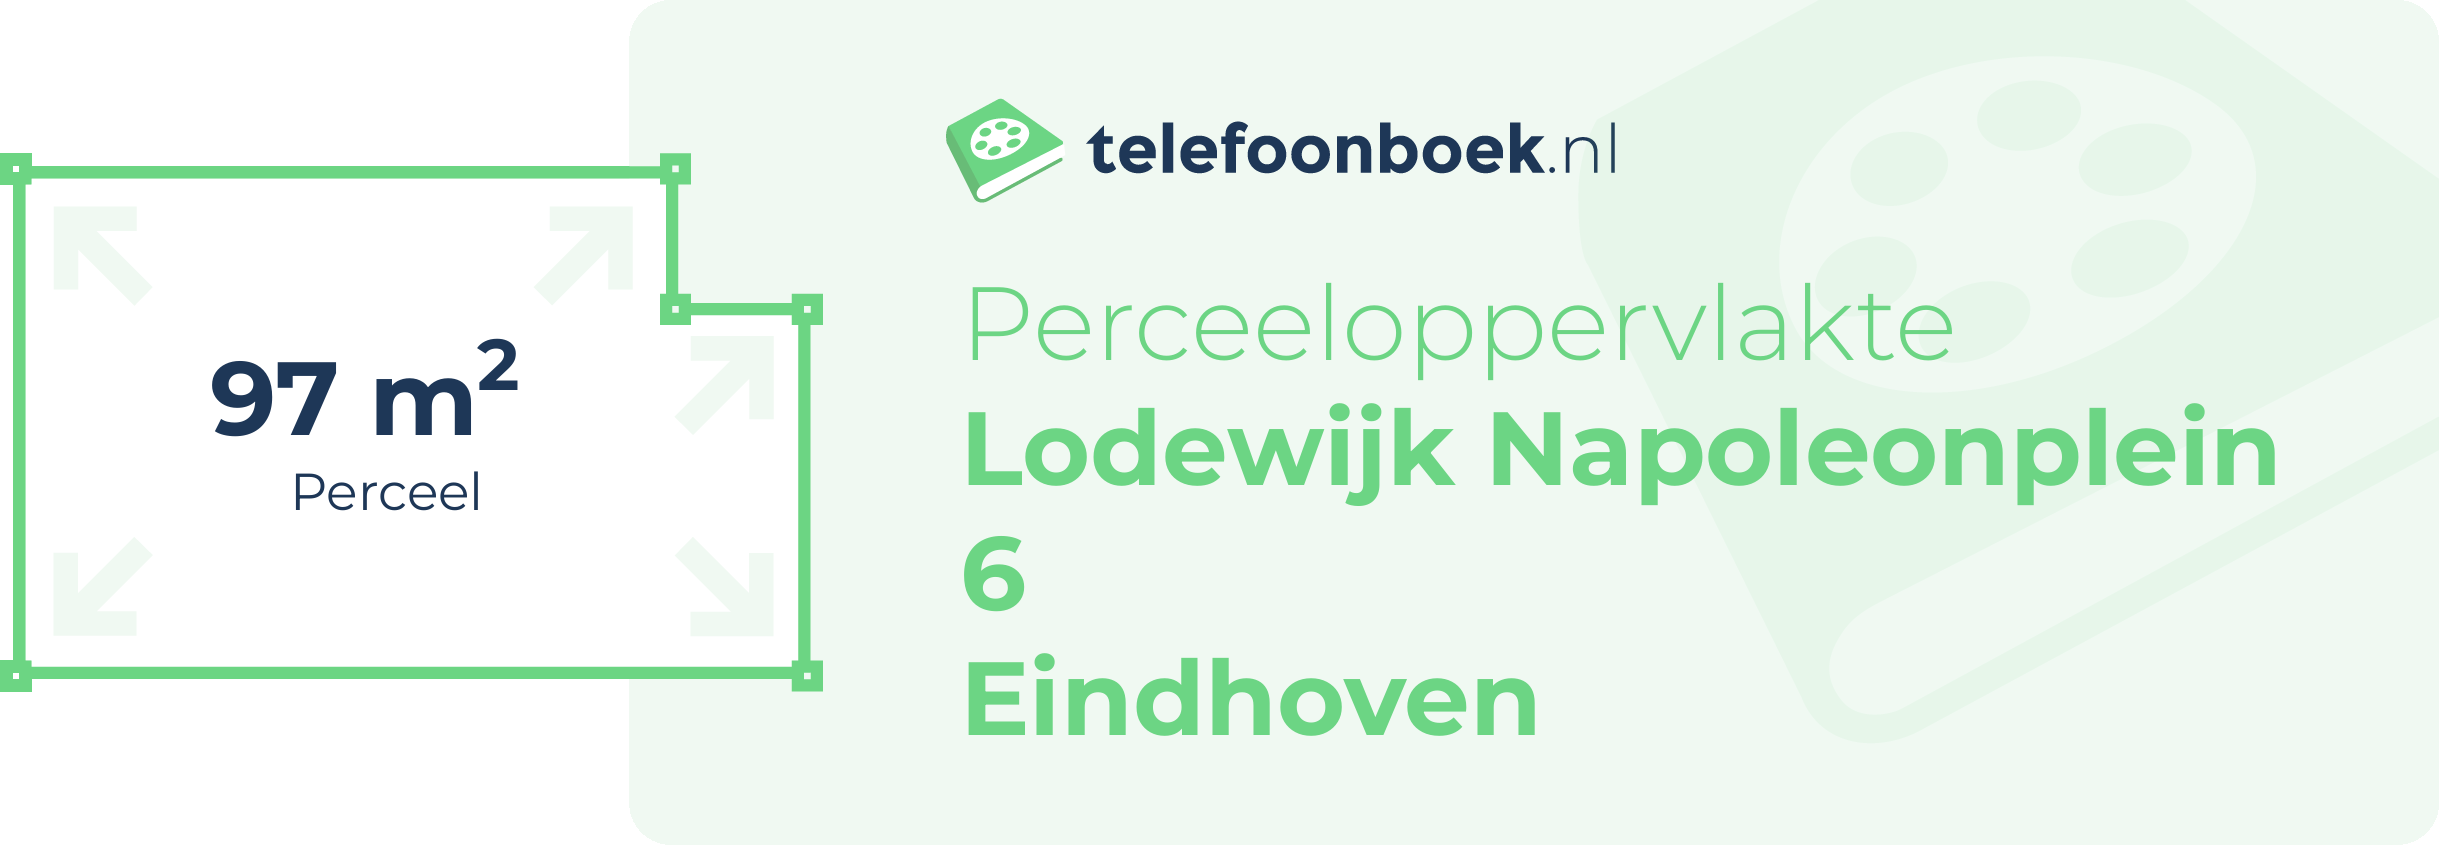 Perceeloppervlakte Lodewijk Napoleonplein 6 Eindhoven